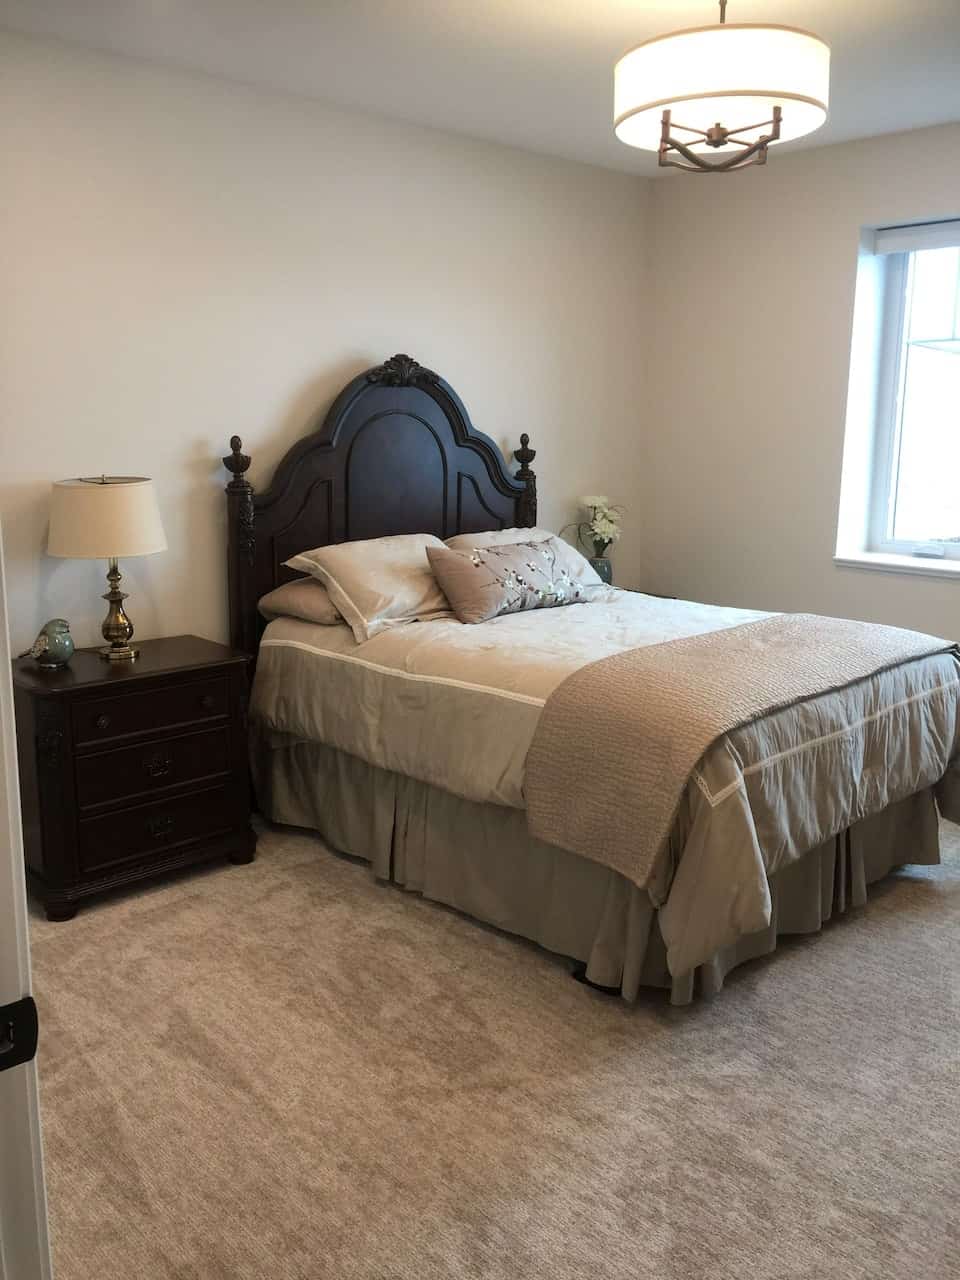 Image of Airbnb rental in Logan, Utah